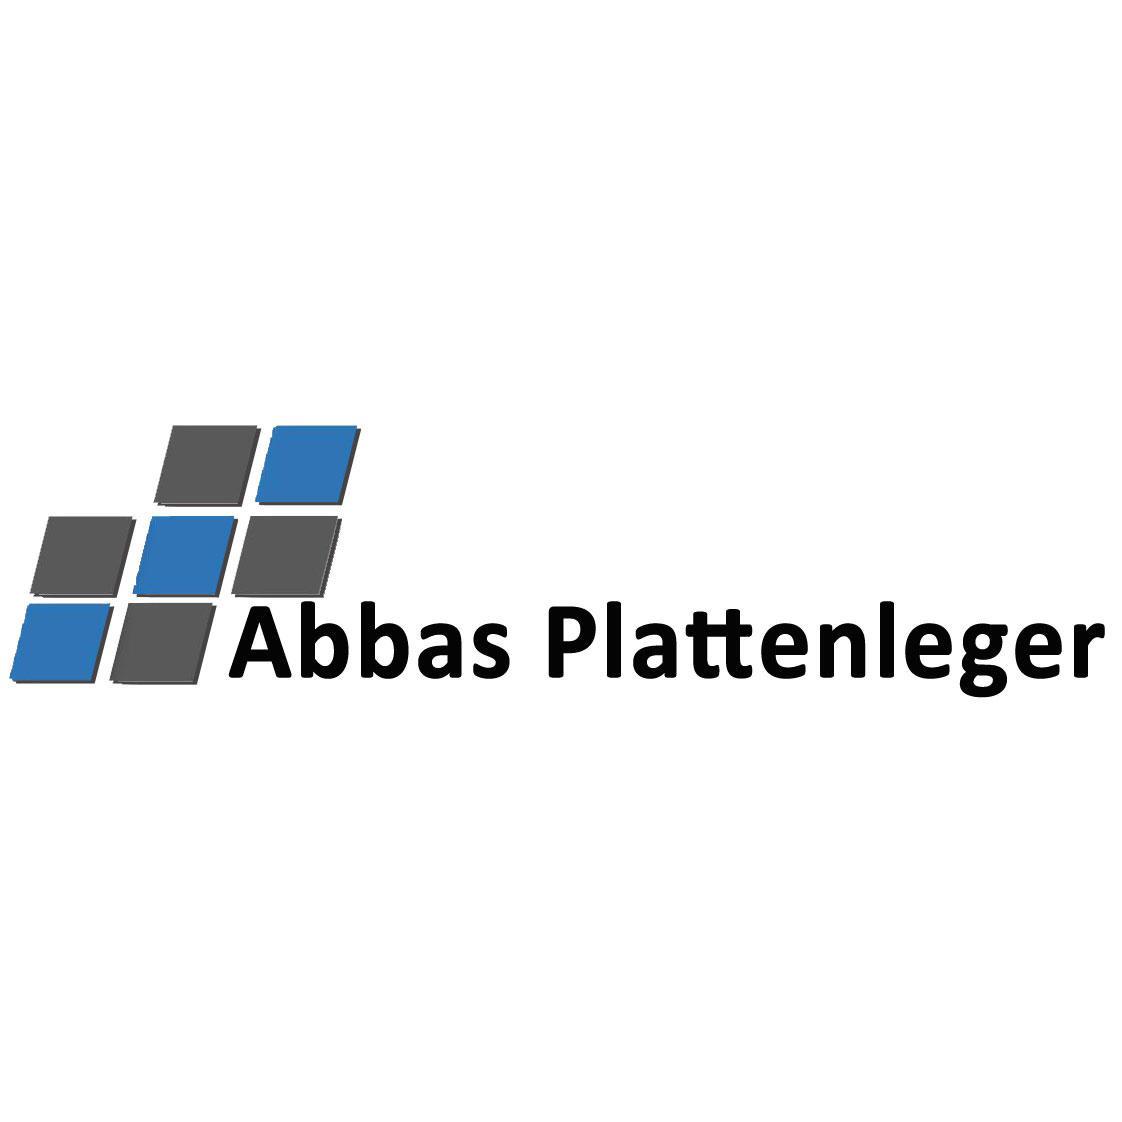 ABBAS Plattenleger Logo